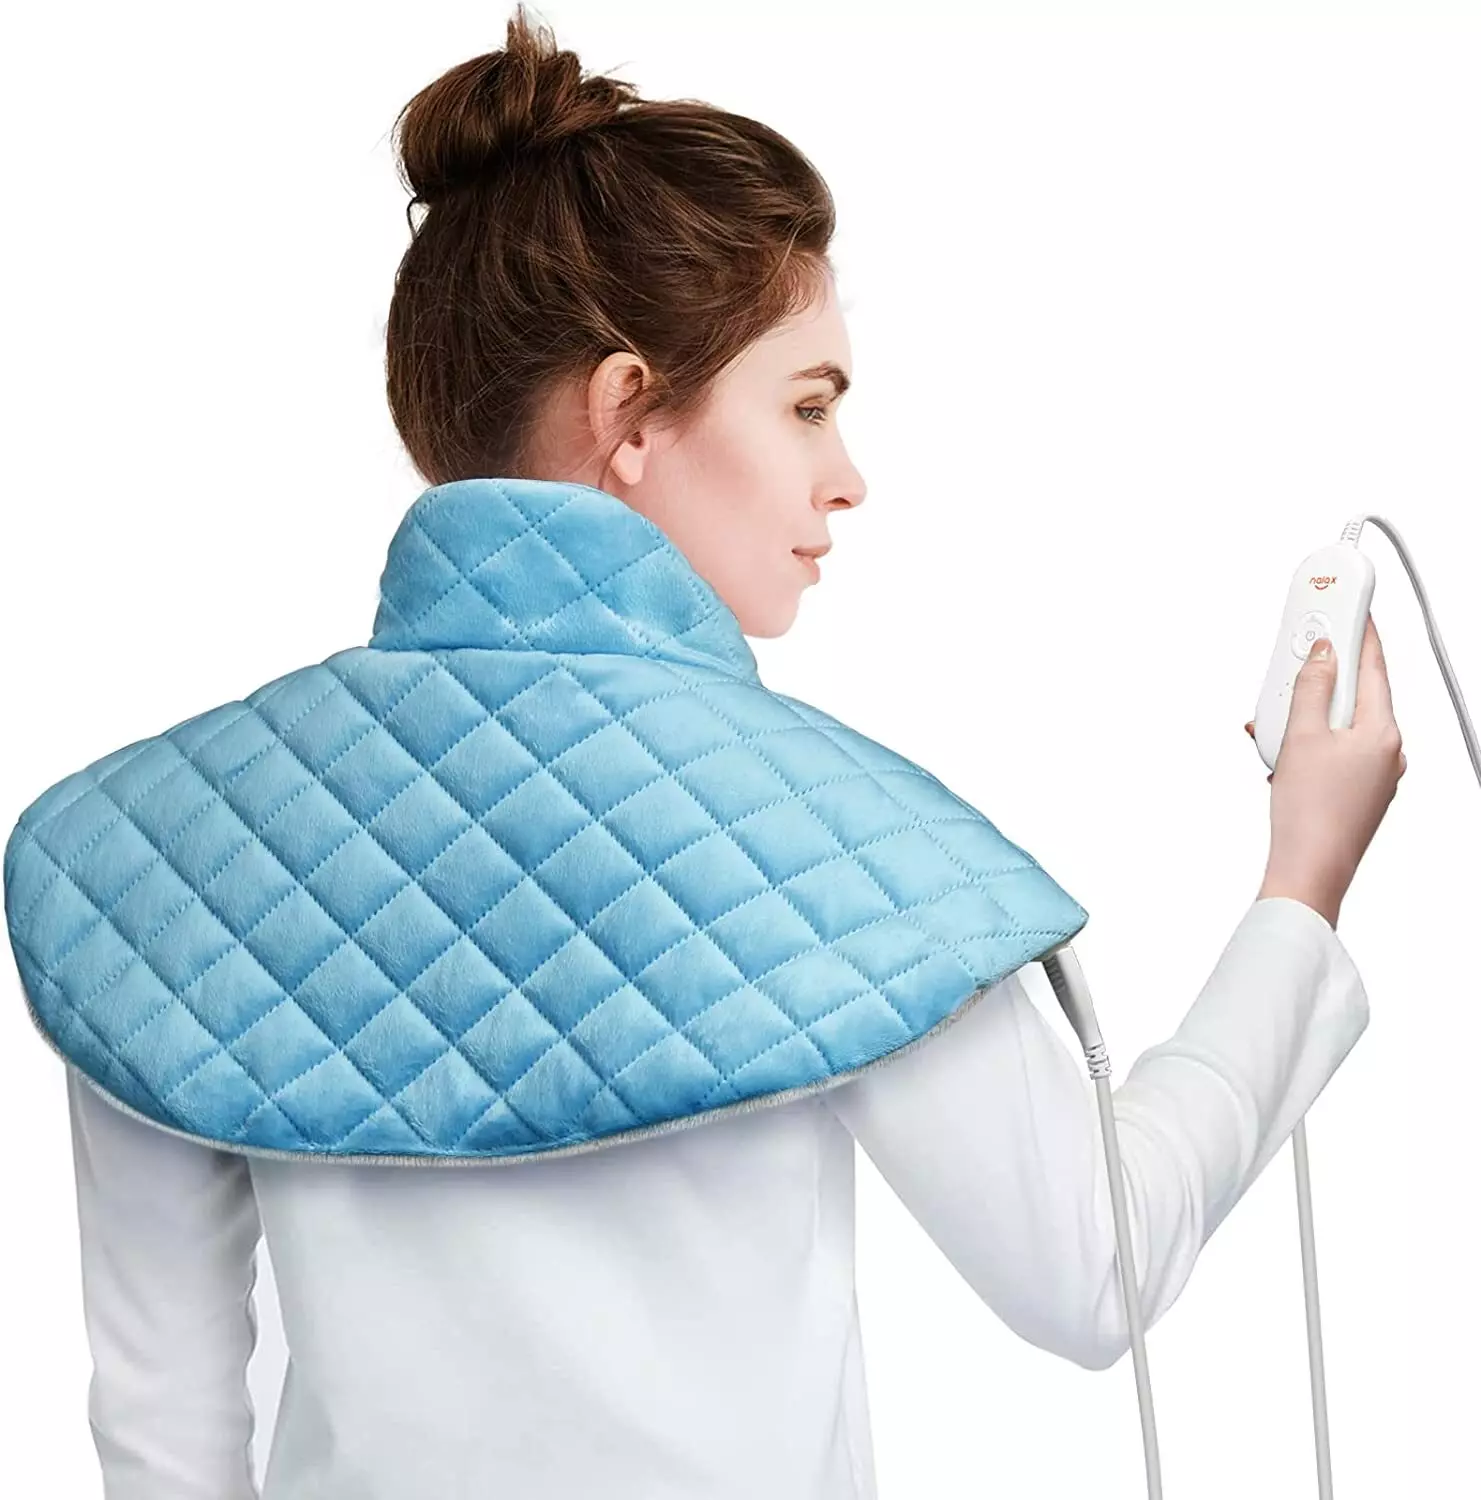 Almohadilla térmica Nalax para cuello y hombros, almohadilla térmica eléctrica para el cuello para aliviar el dolor, envoltura térmica grande para cuello y hombro de 22 x 24 pulgadas con 6 ajustes de calor, apagado automático, controlador de pantalla LCD 1